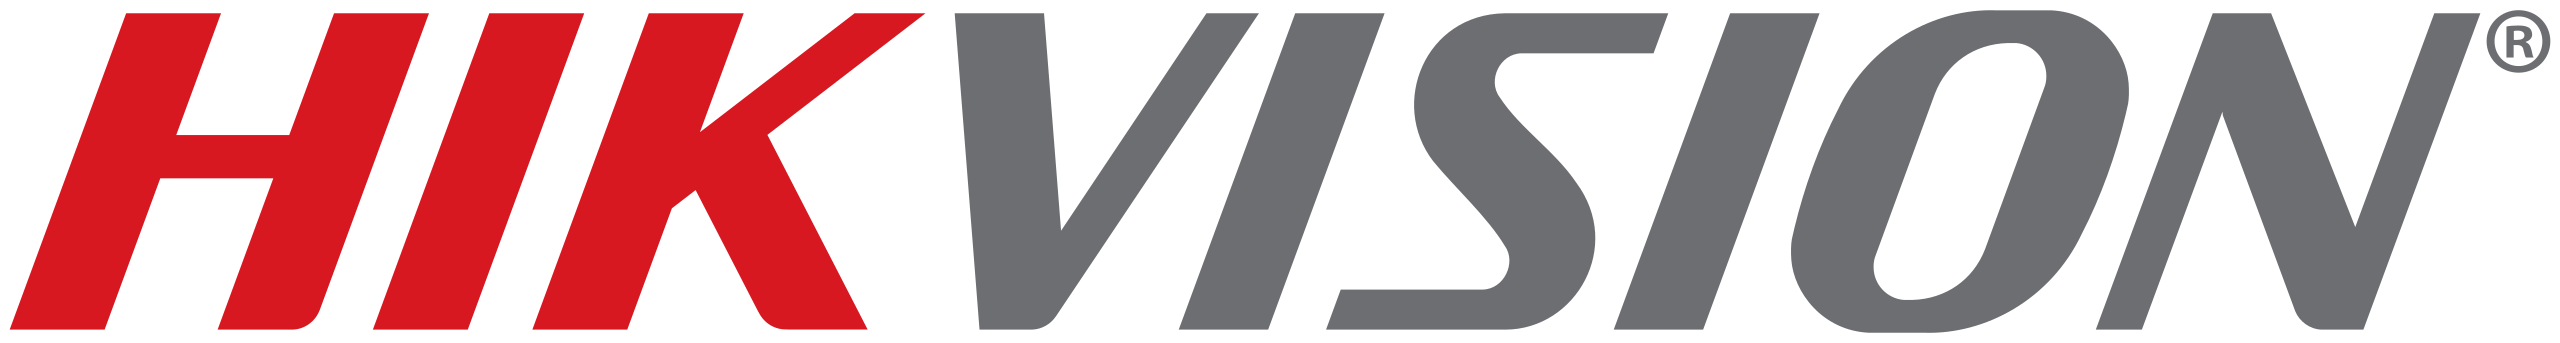 2560px Hikvision logo.svg - Home Comeros